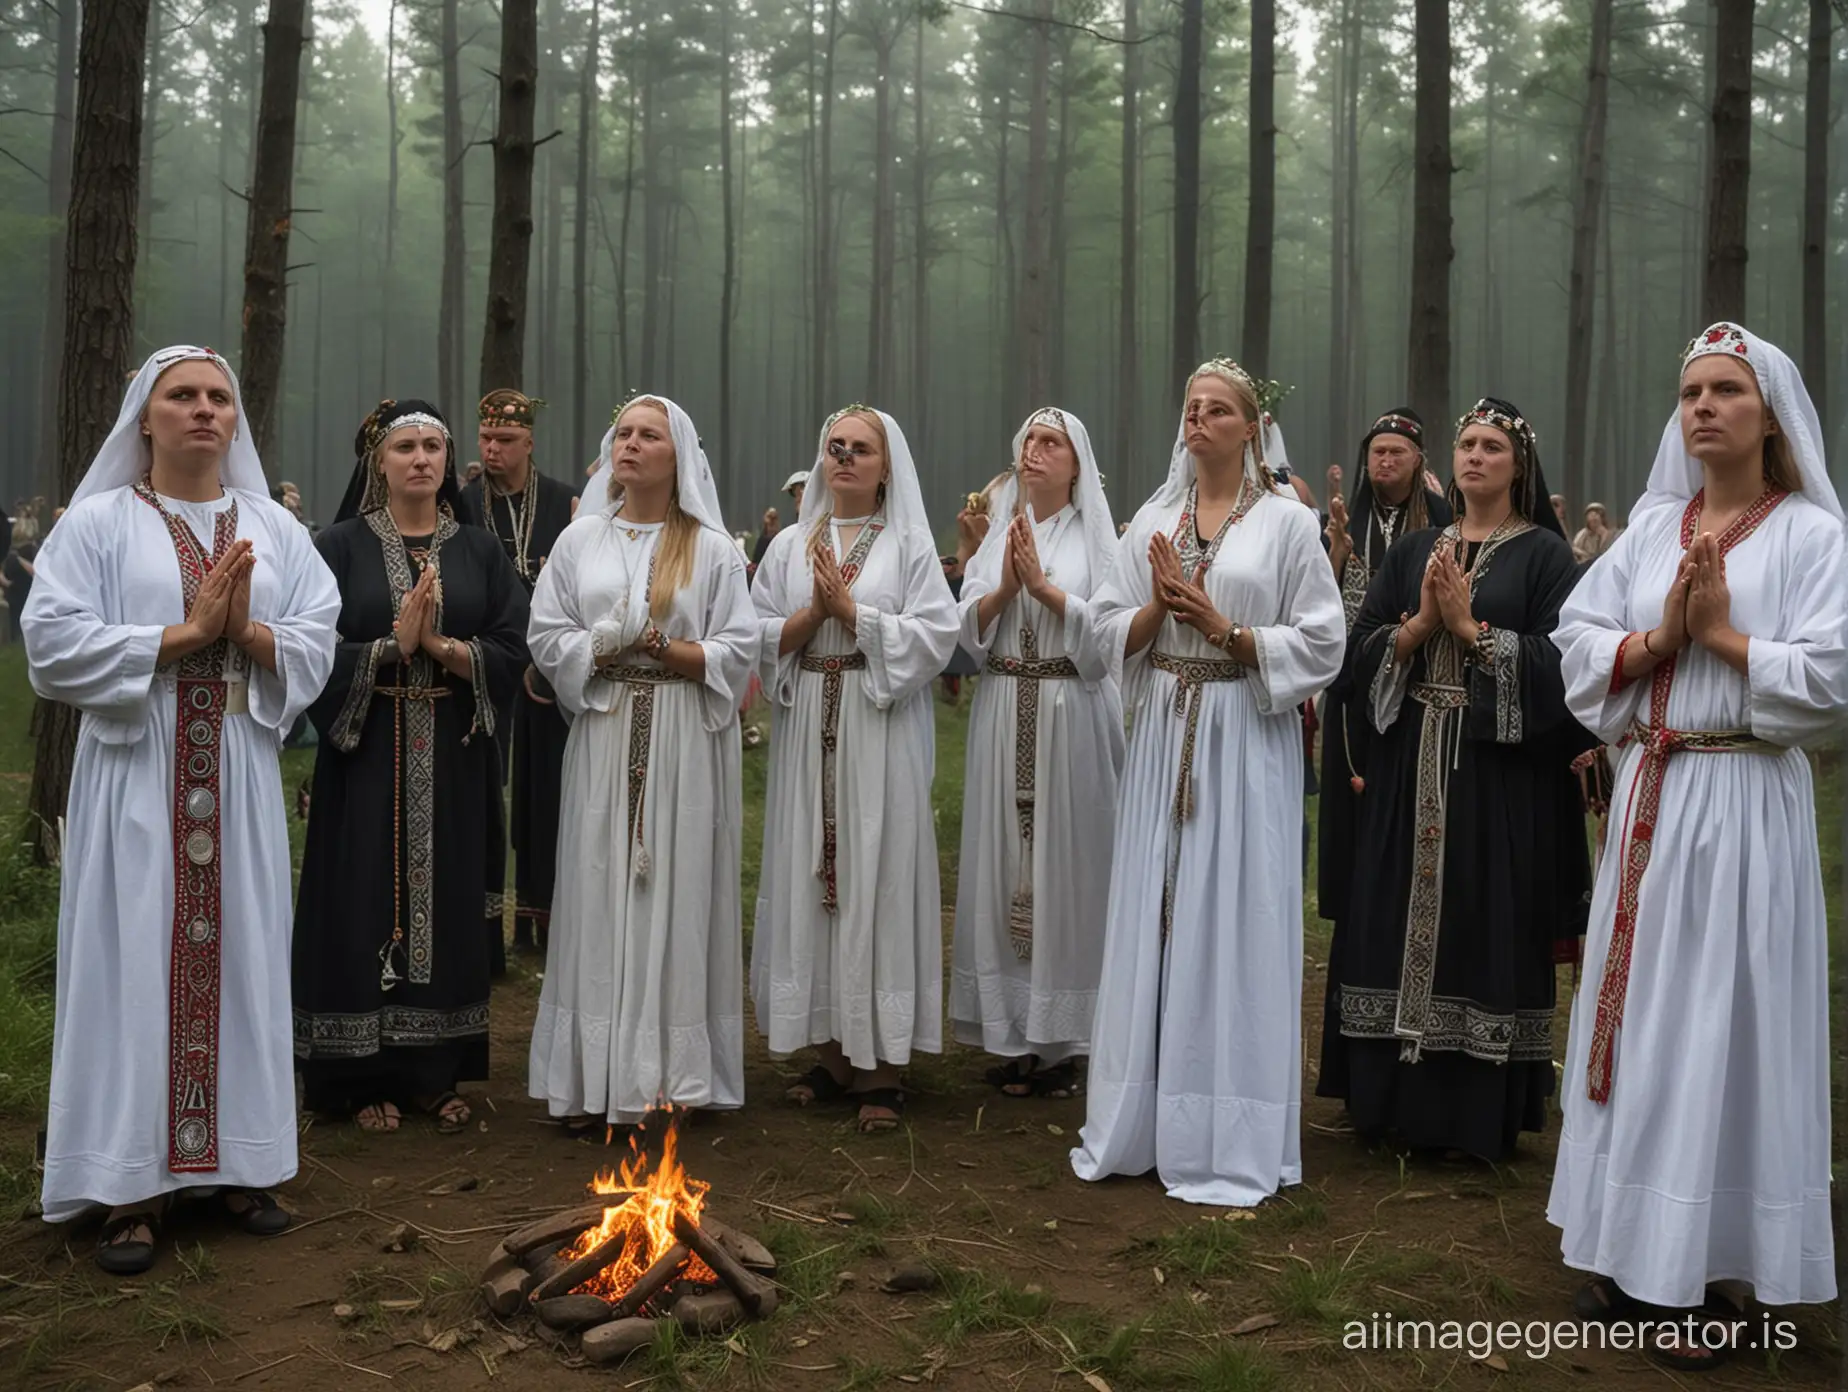 В лесах во время затмения славянский языческий куль проводит свой обряд во время солнечного затмения